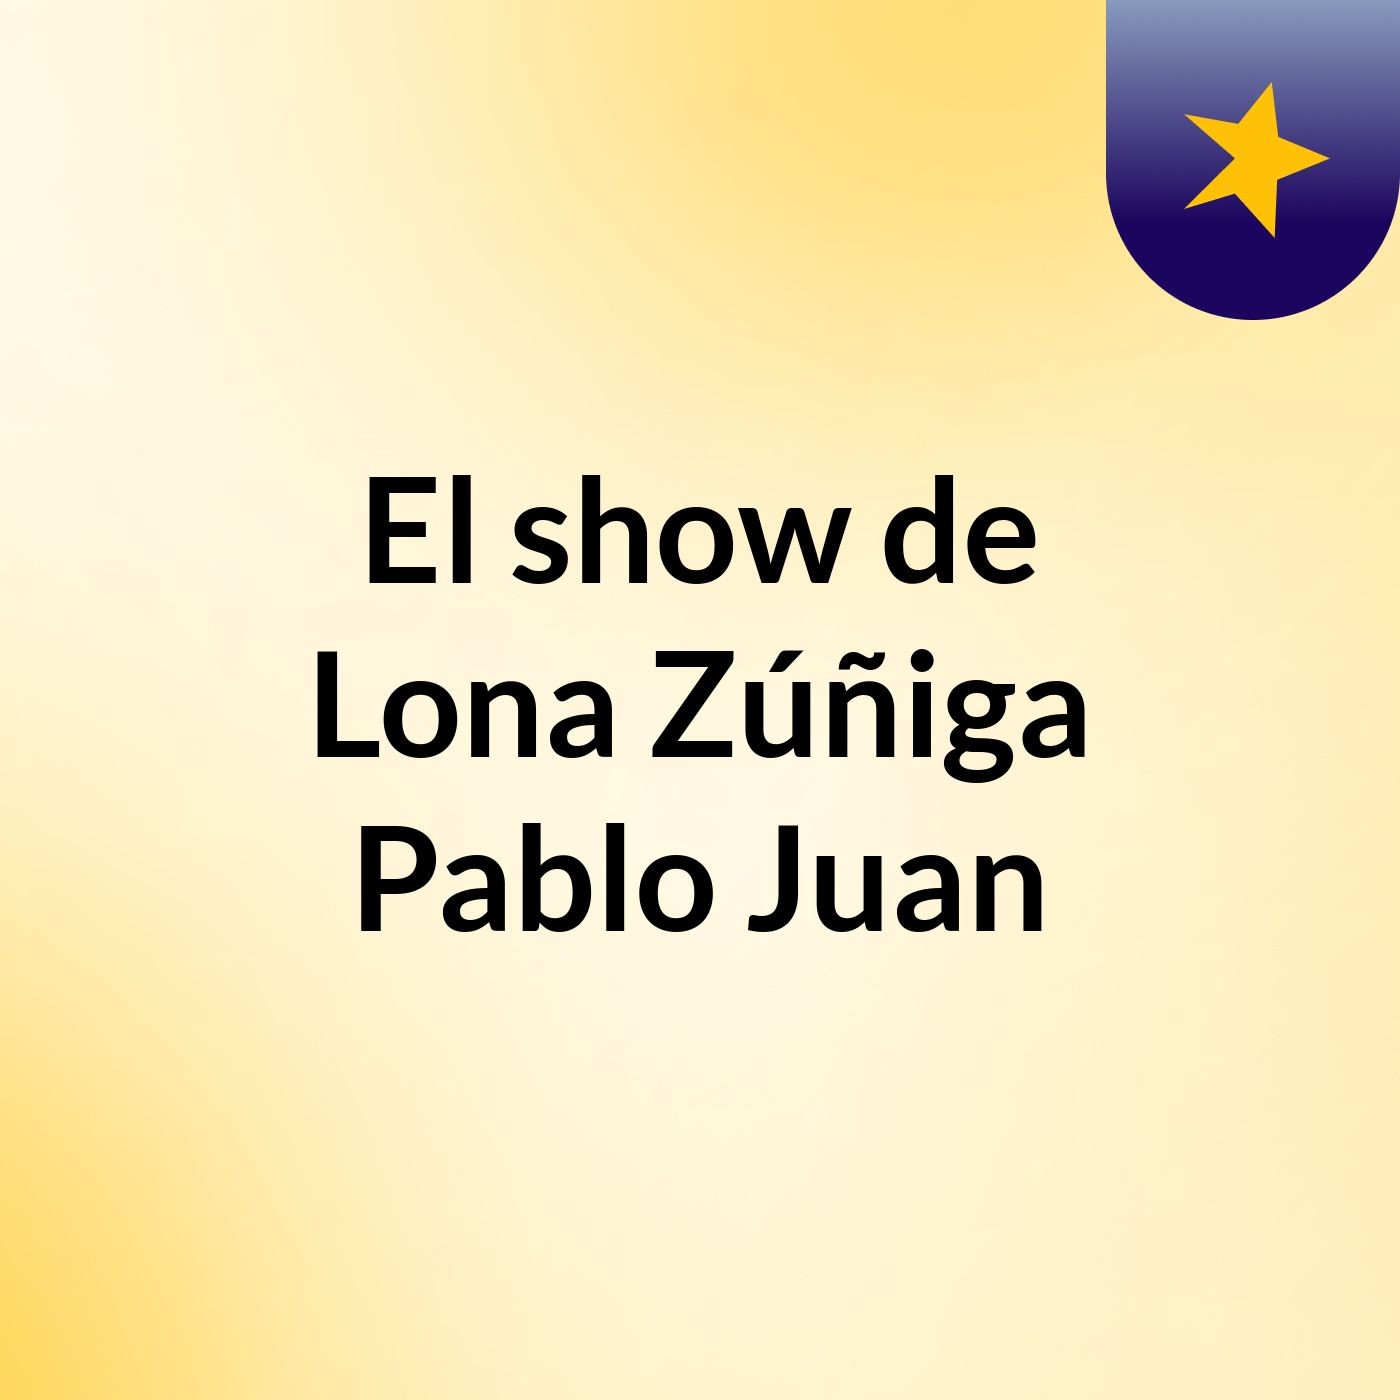 El show de Lona Zúñiga Pablo Juan